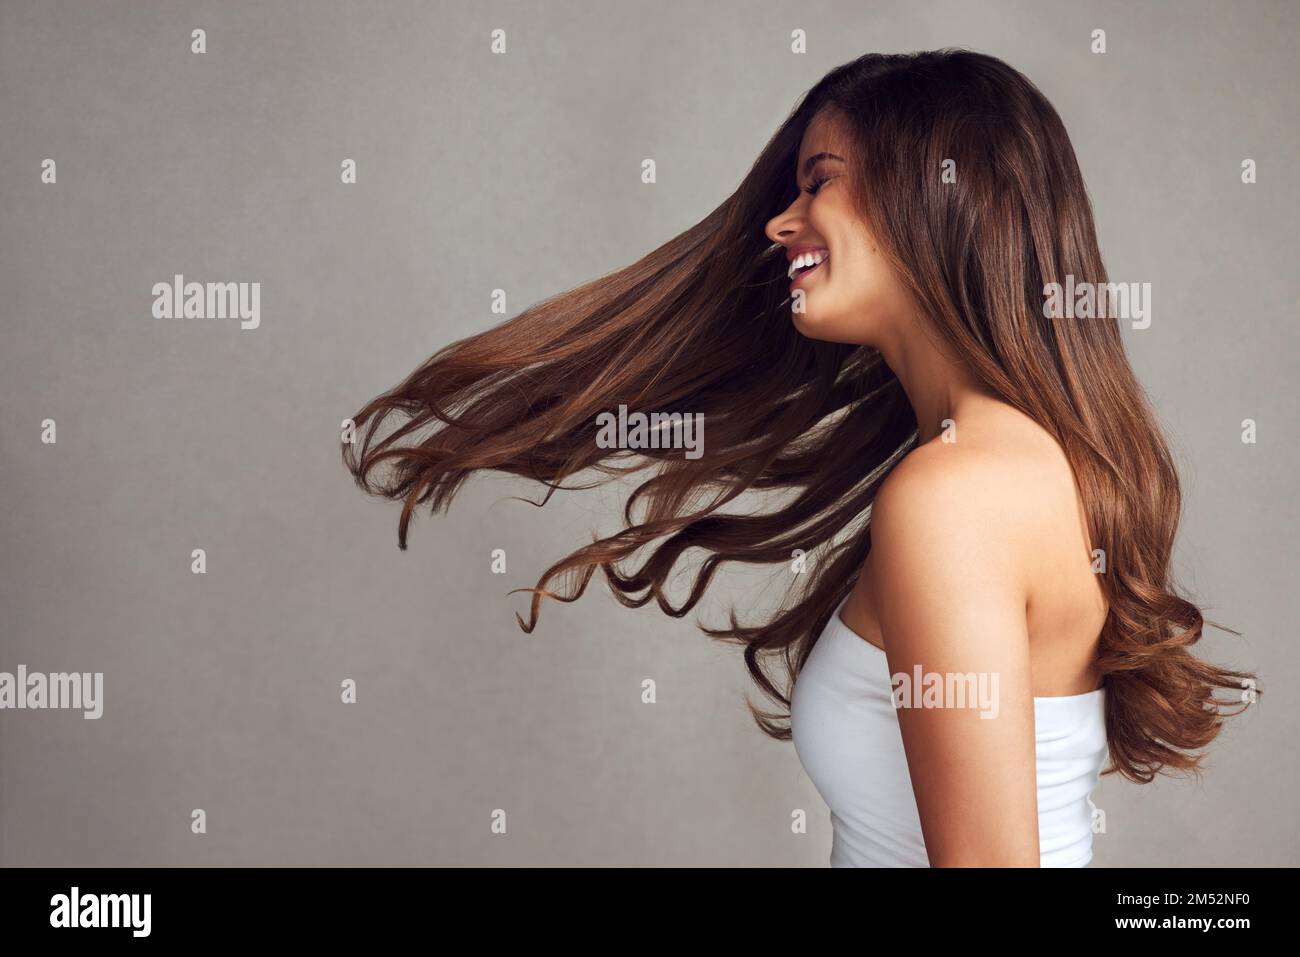 Qui pourrait dire non à avoir des cheveux magnifiques. Photo en studio d'une jeune femme belle avec de longs cheveux magnifiques posant sur un fond gris. Banque D'Images